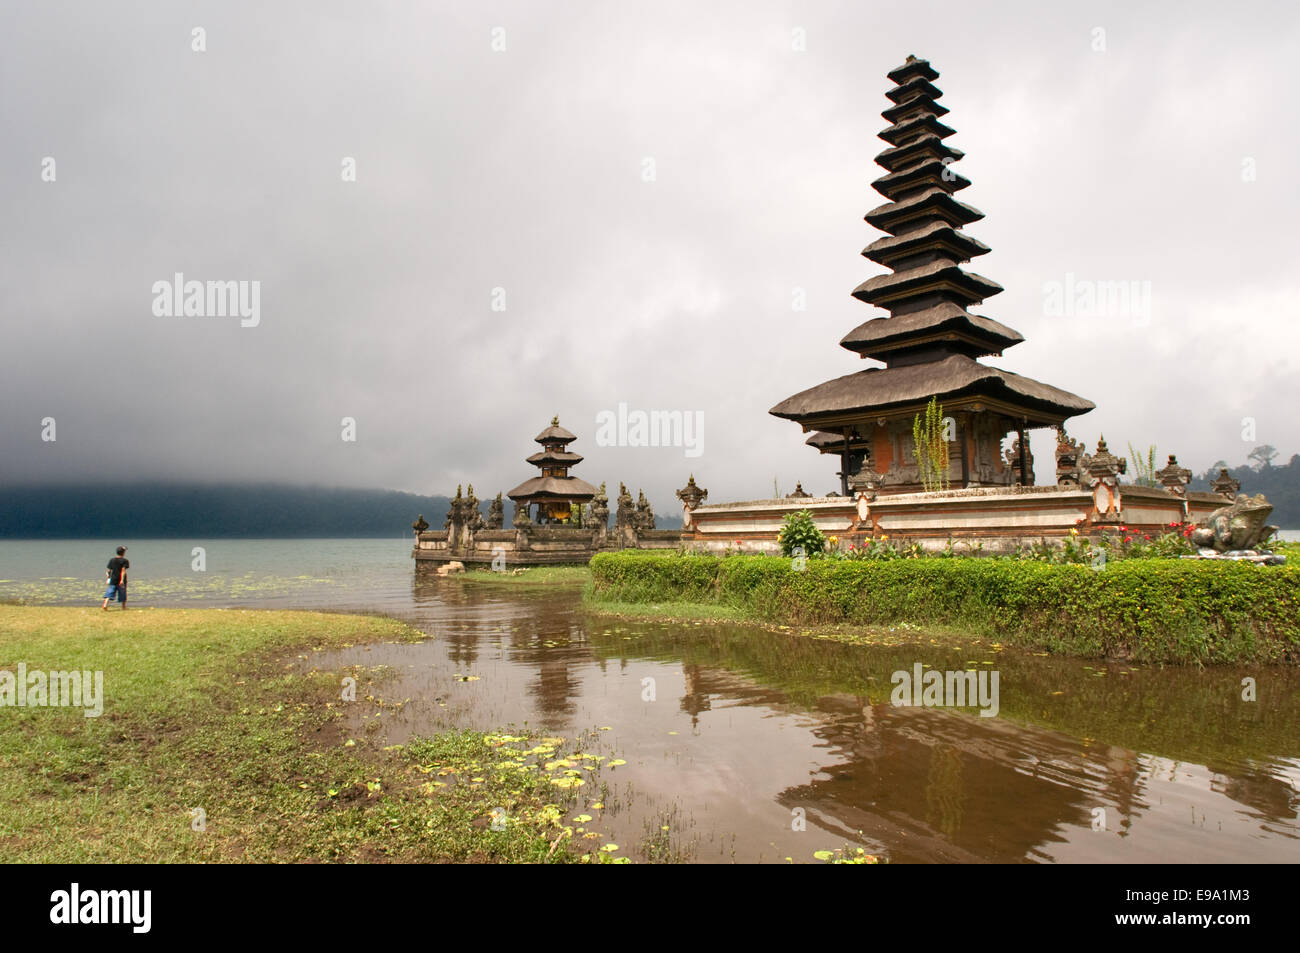 Bali Tempel auf einem See Pura Ulun Danu Bratan Indonesien. Pura Ulan Danu Bratan Tempel in Bedugul. Es entstand im Jahre 1633 durch den König Stockfoto